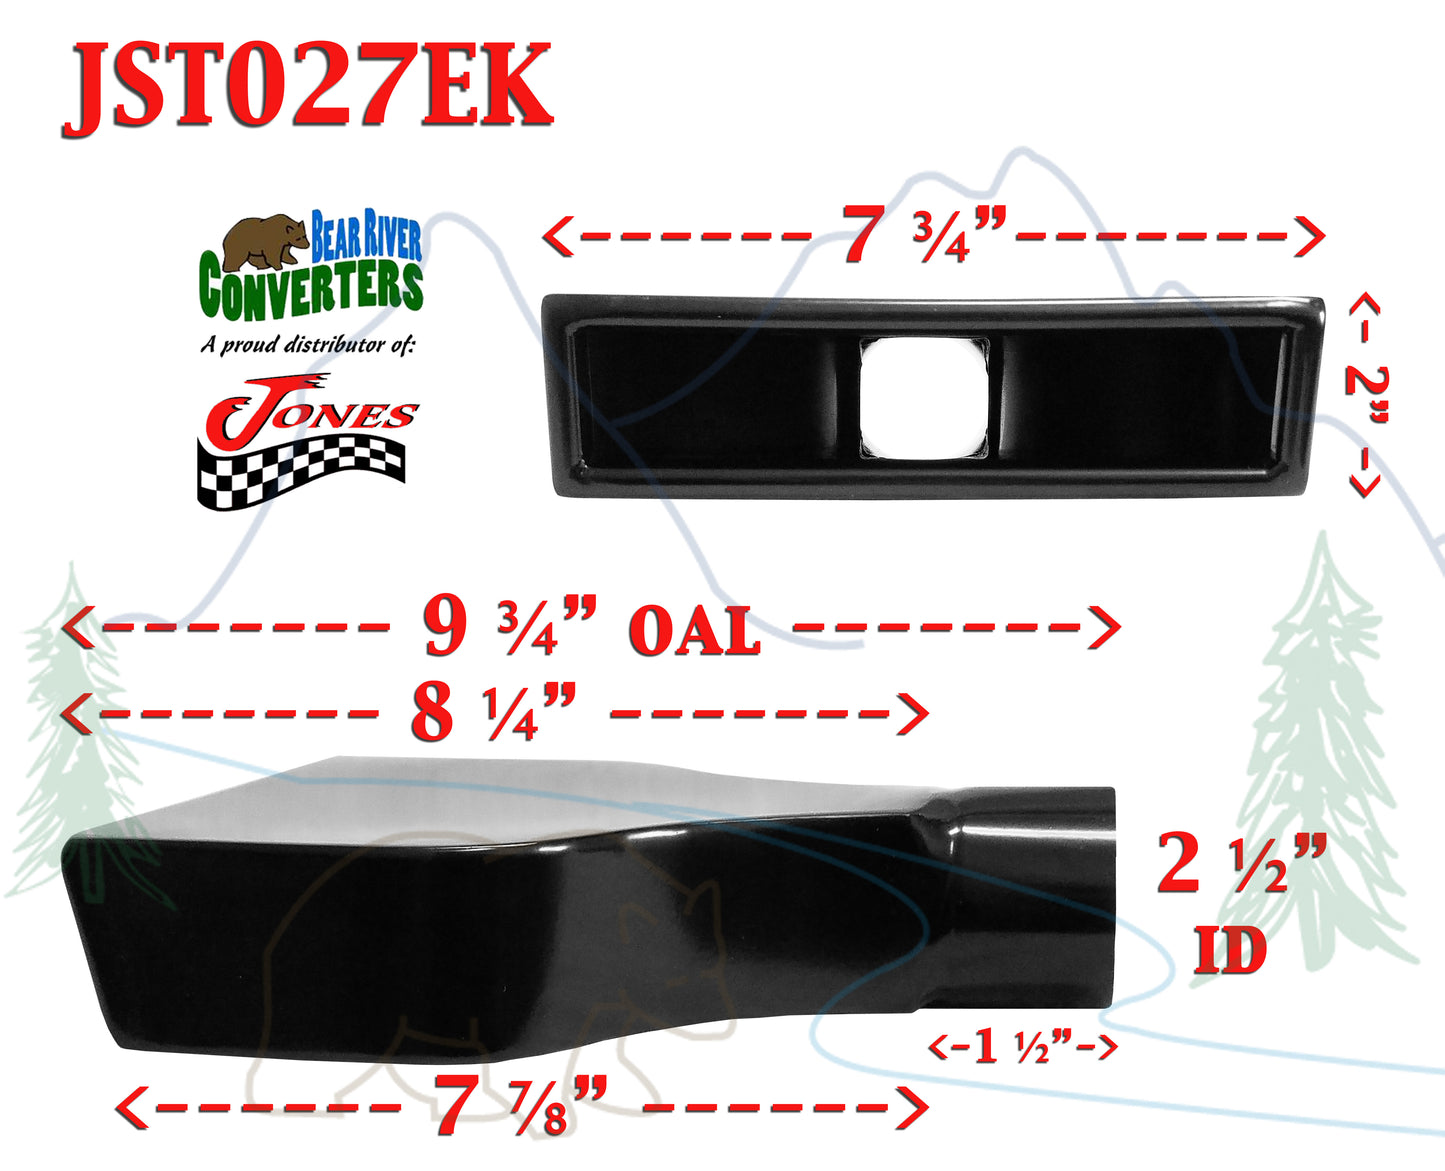 JST027EK 2.5" Black Rectangle Camaro Corvette Exhaust Tip 2 1/2" Inlet 10" Long